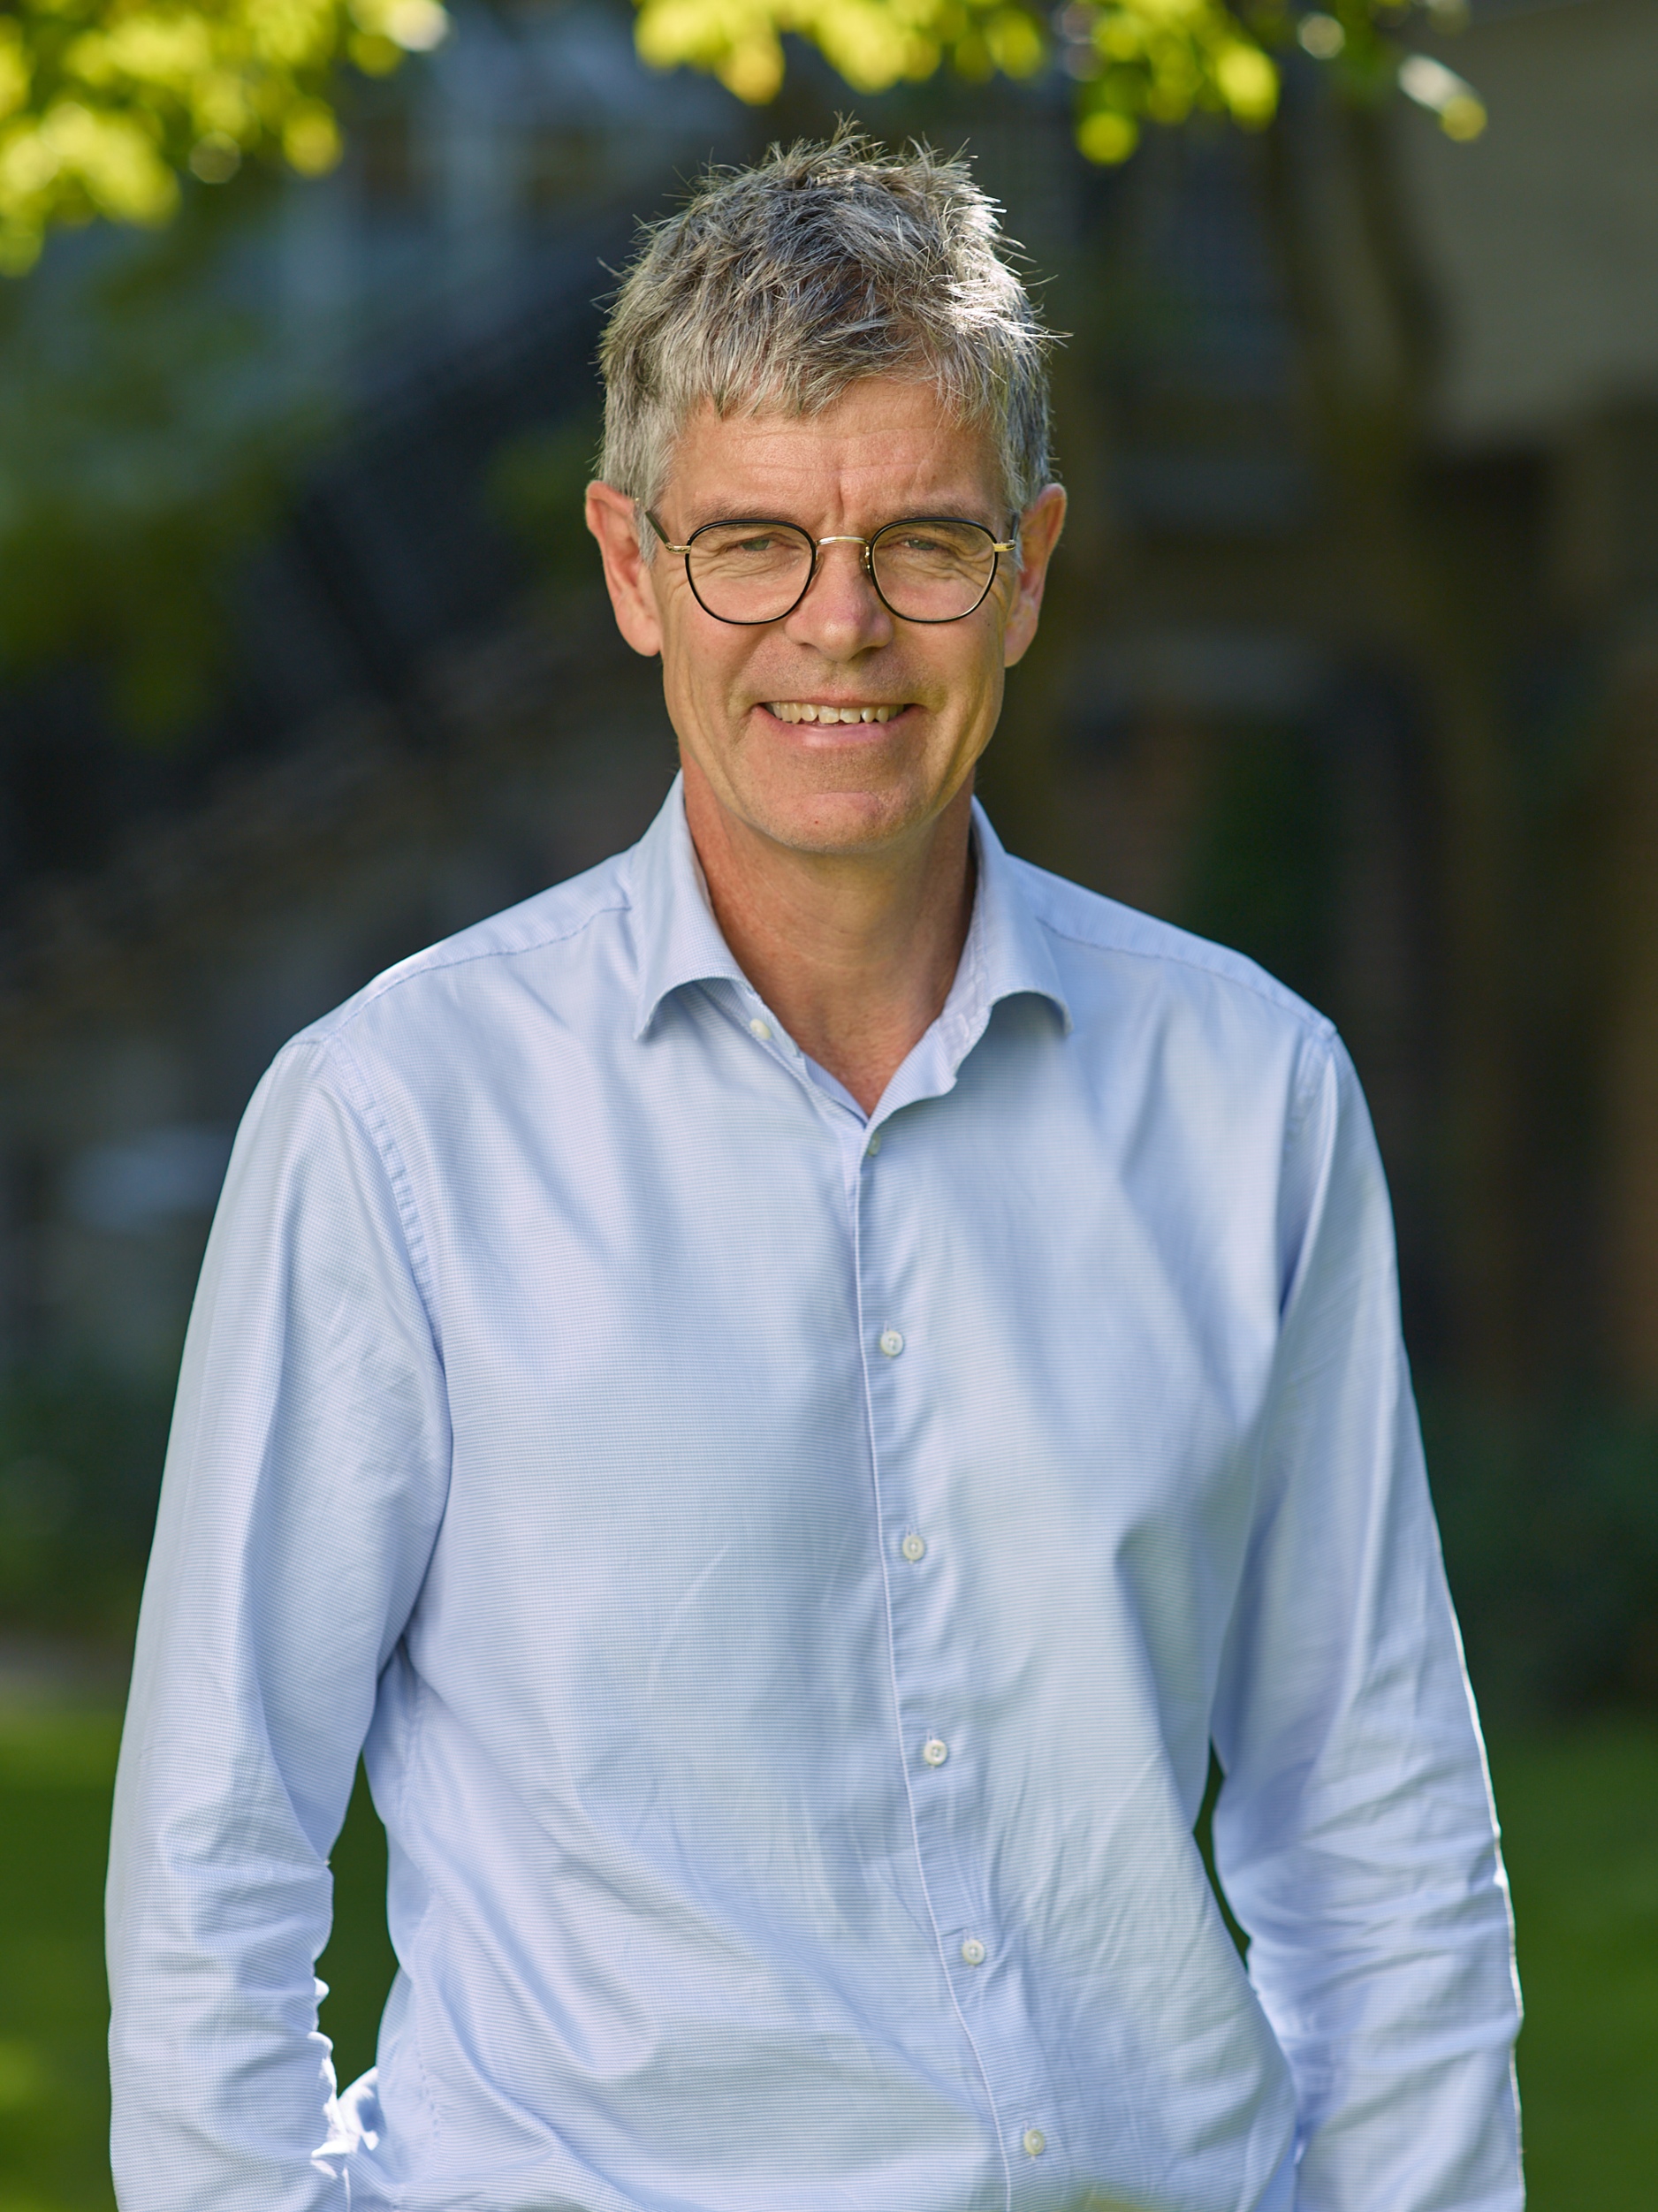 Henrik Krantz, CEO AF Bostäder